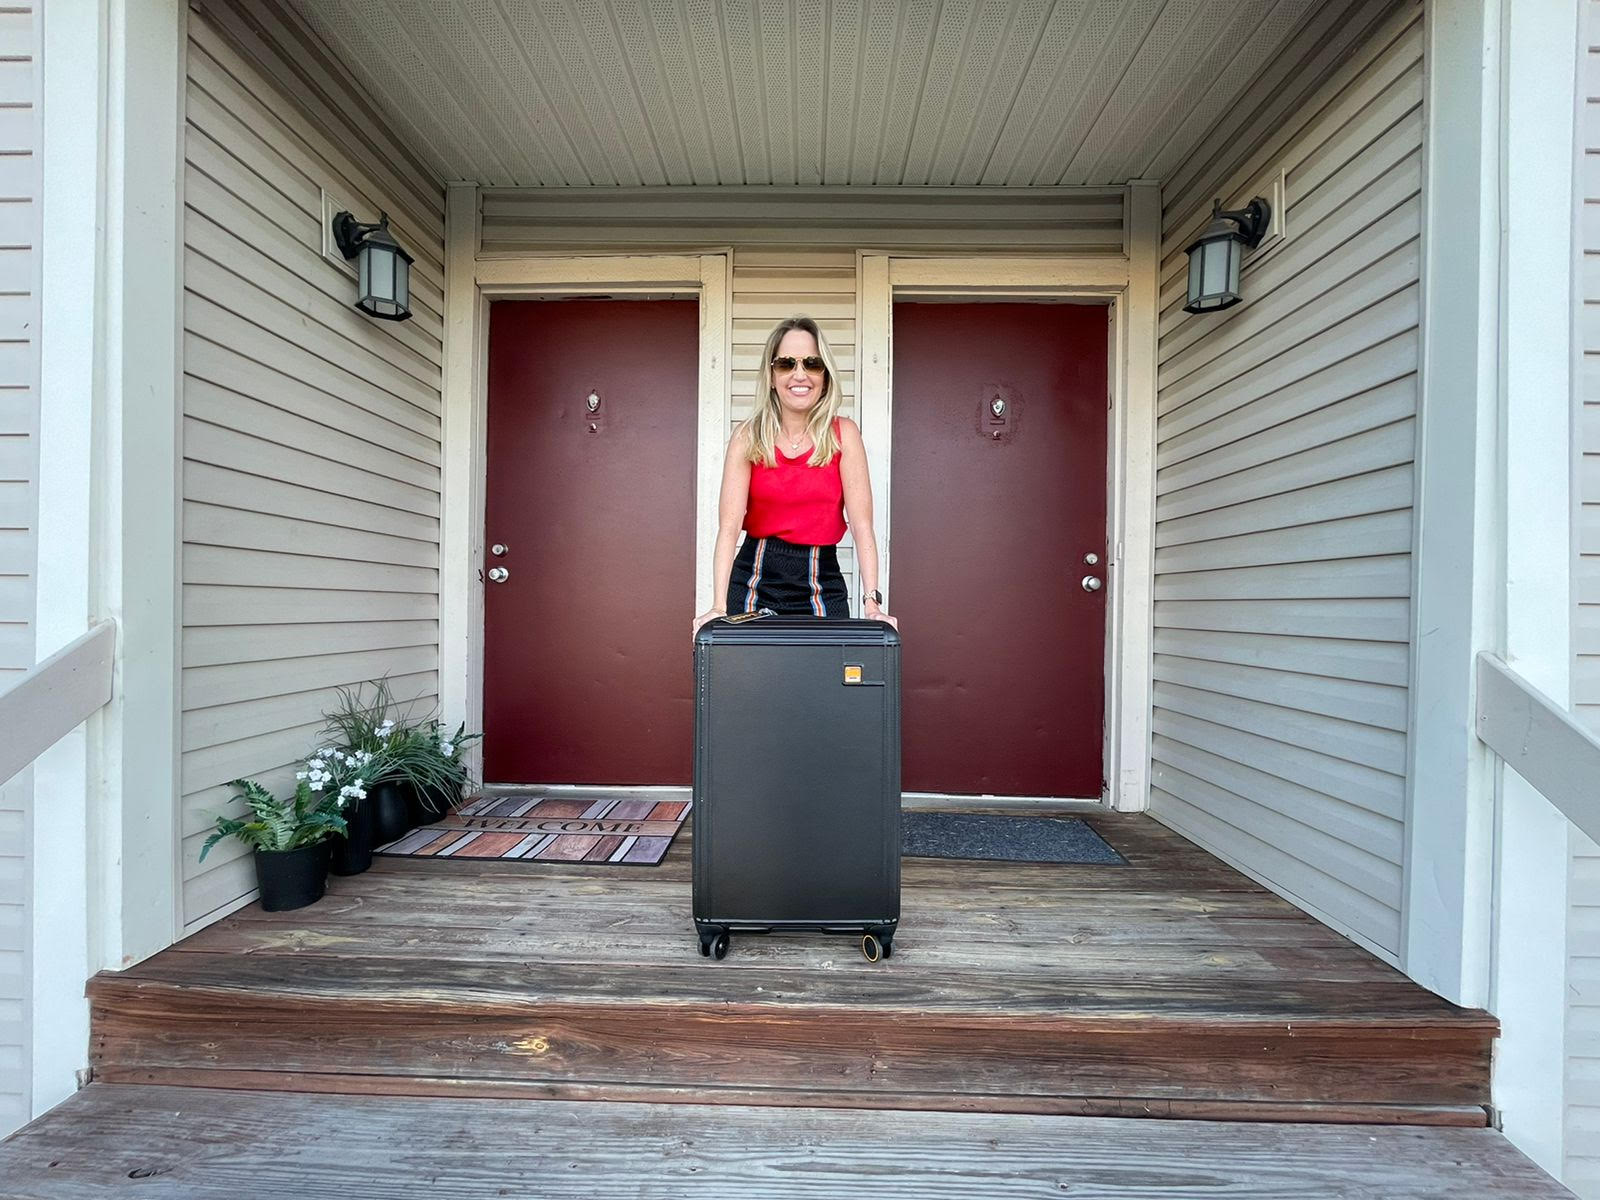  Juliana Pereira standing in front of red door with suitcases